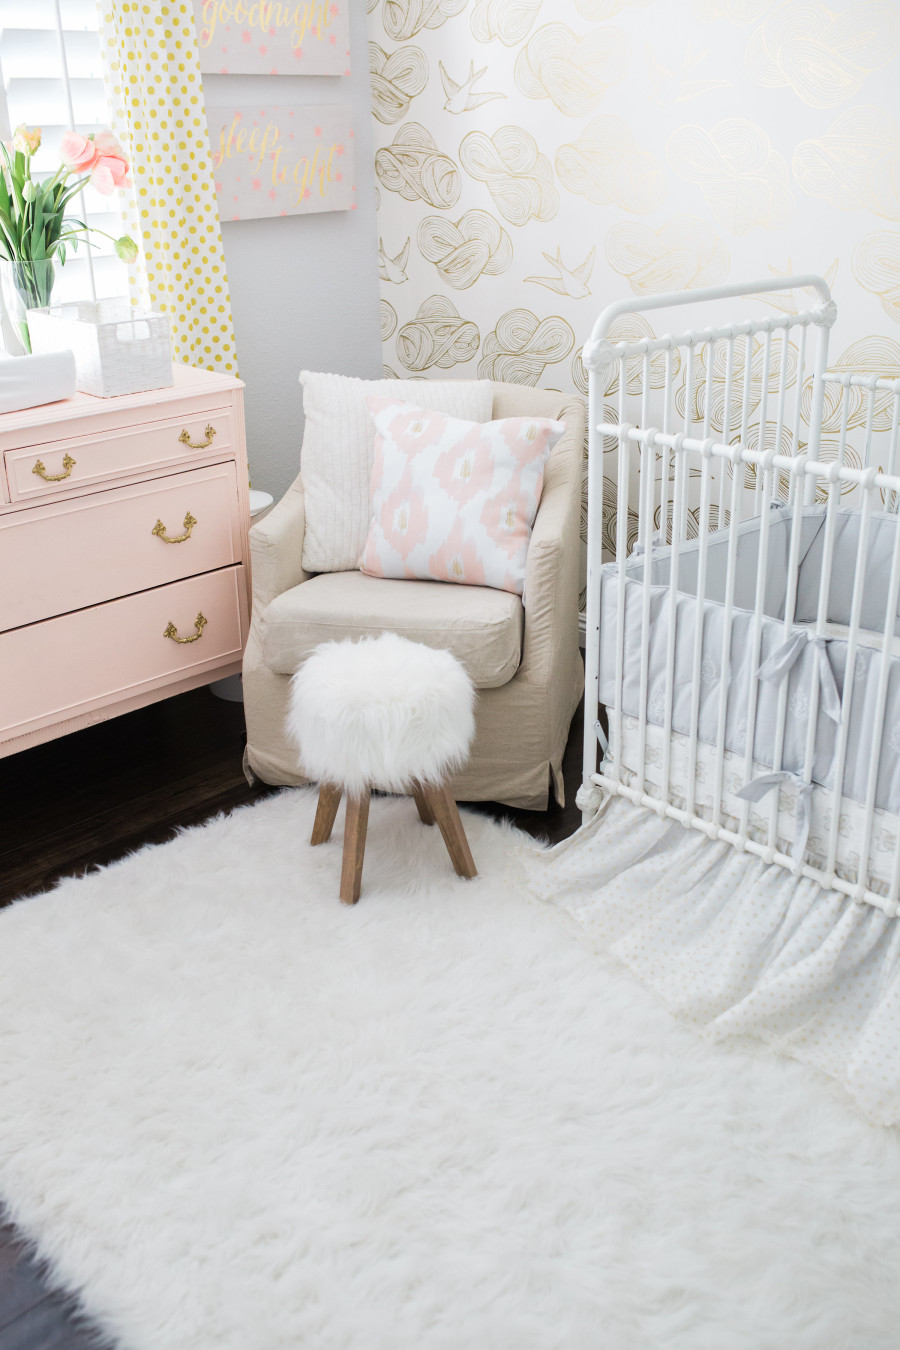 Baby girl nursery design